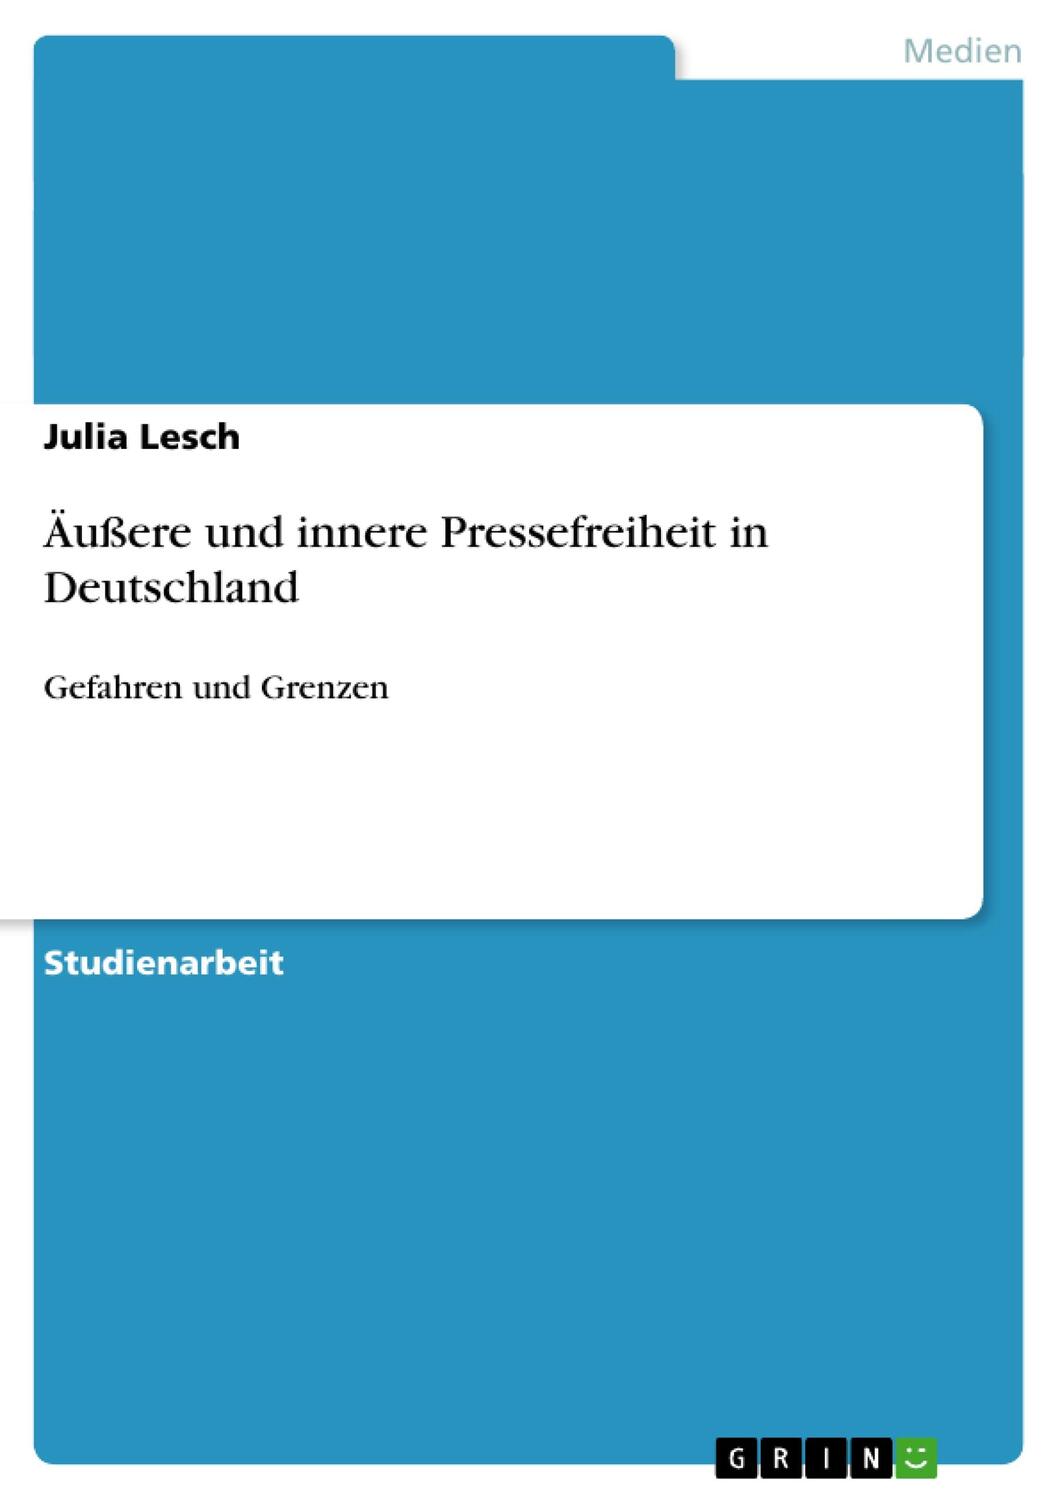 Äußere und innere Pressefreiheit in Deutschland - Lesch, Julia